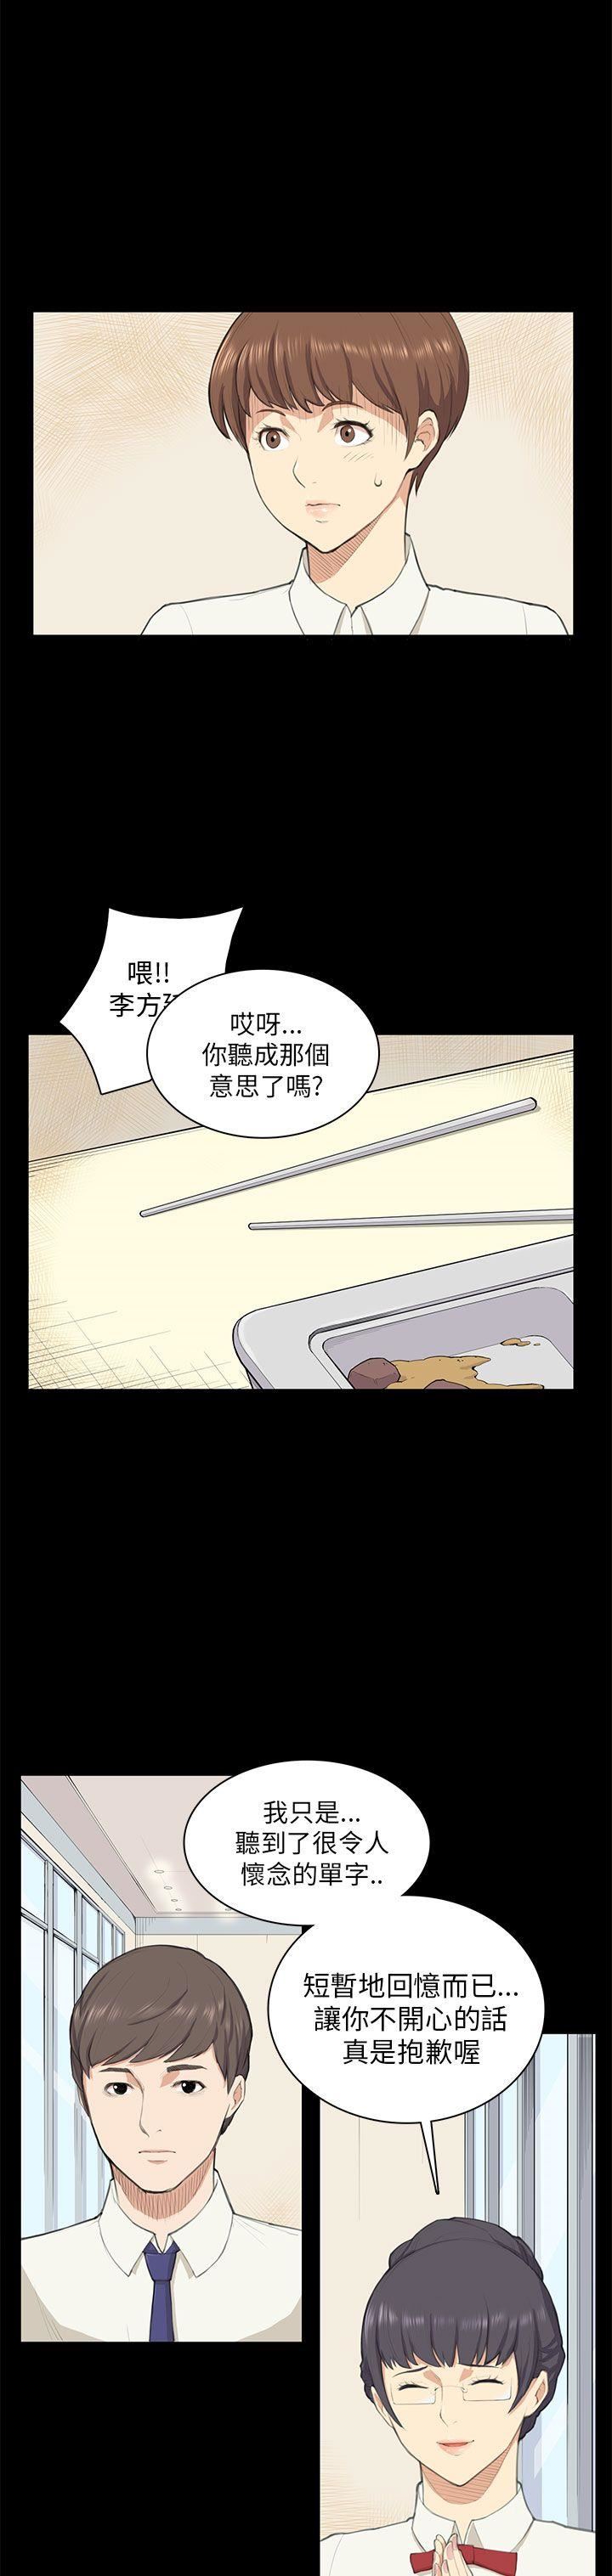 韩国污漫画 斯德哥爾摩癥候群 第10话 8